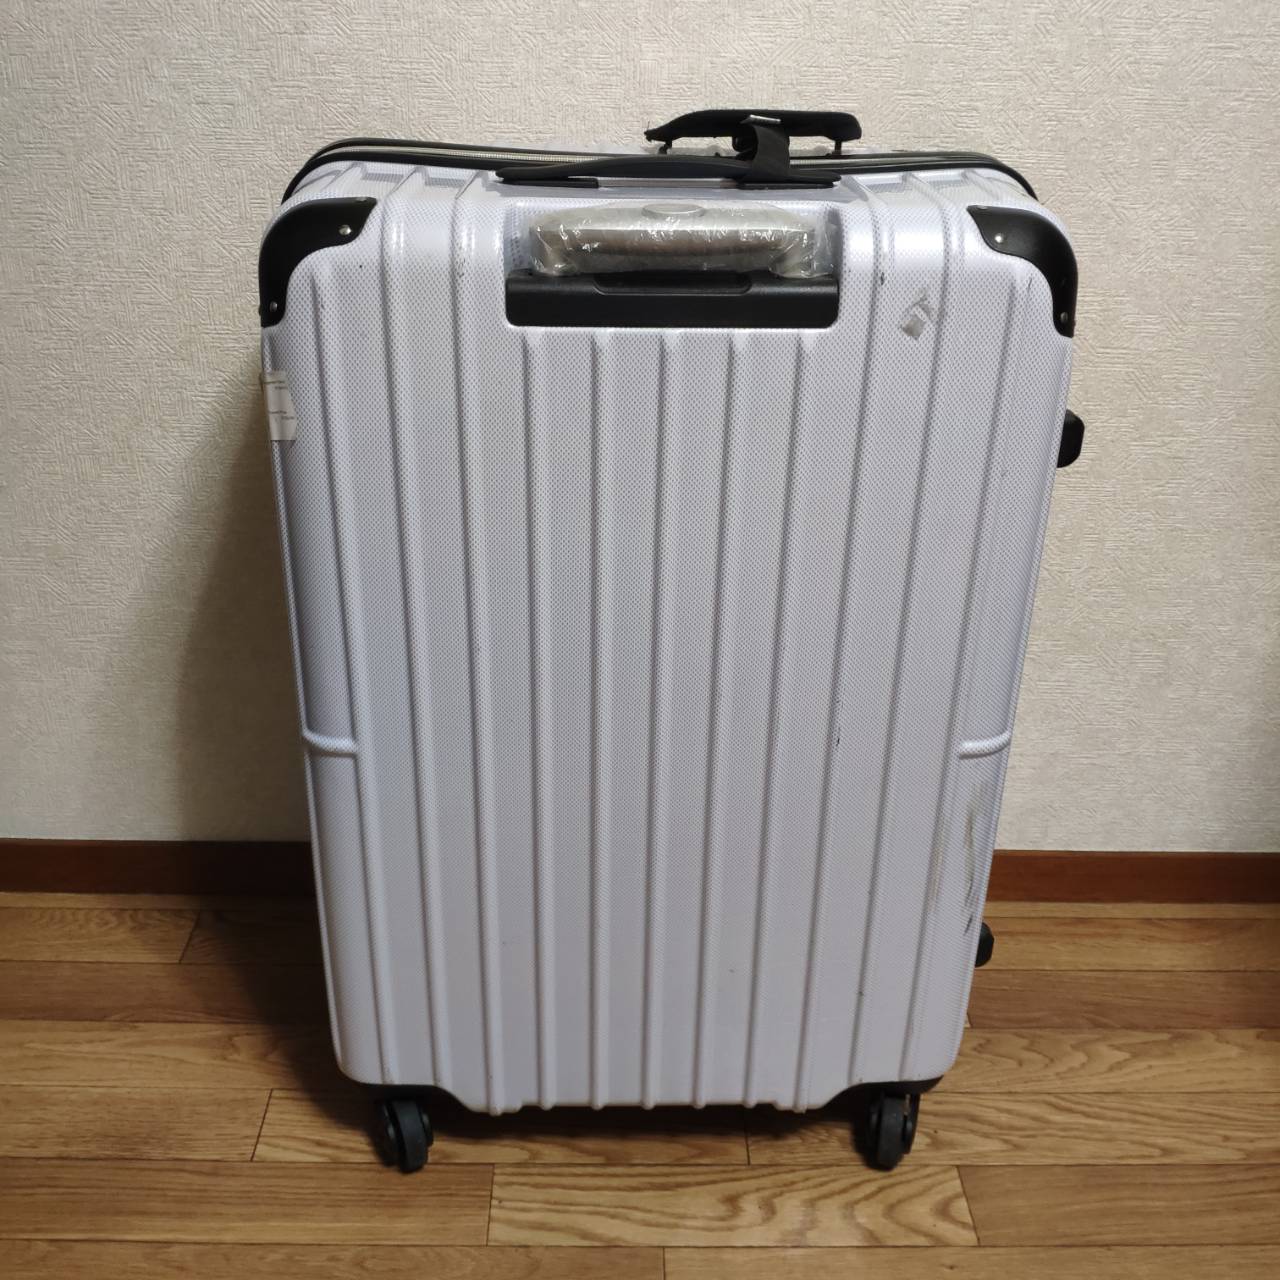 口コミ ドンキホーテのスーツケースが安いのでおすすめ 壊れるは嘘 華山未来研究室